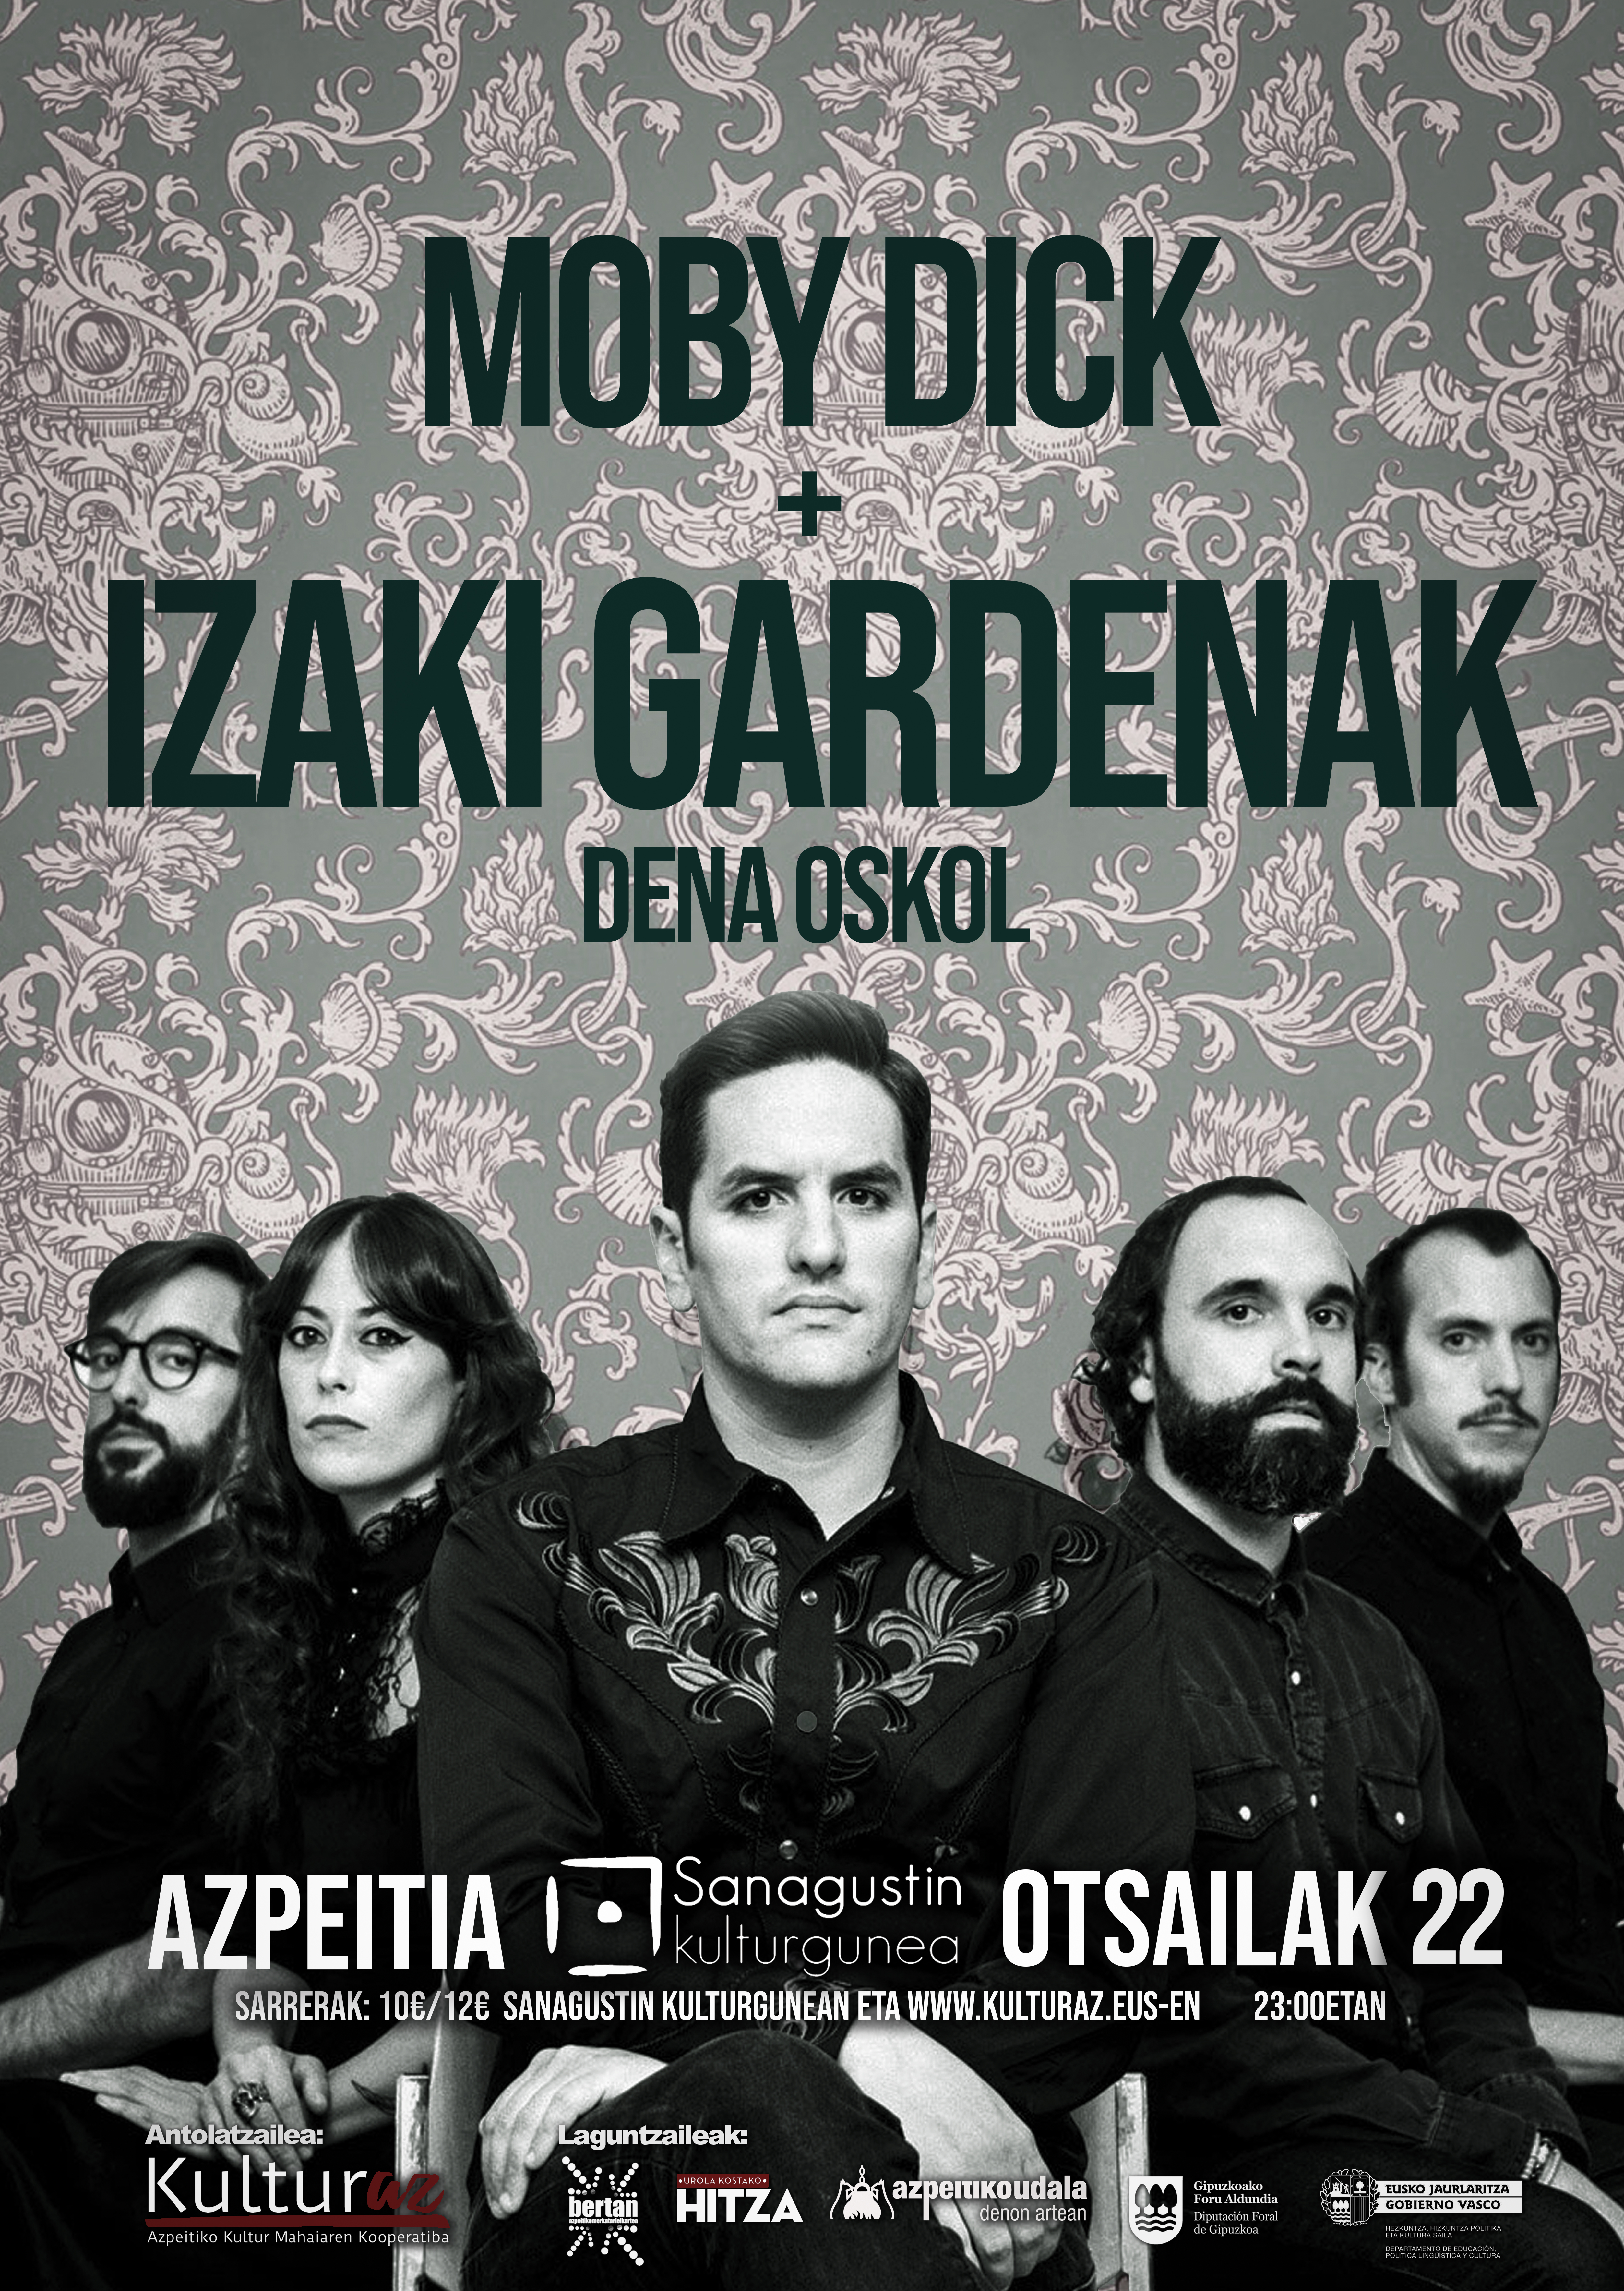 Izaki Gardenak + Moby Dick